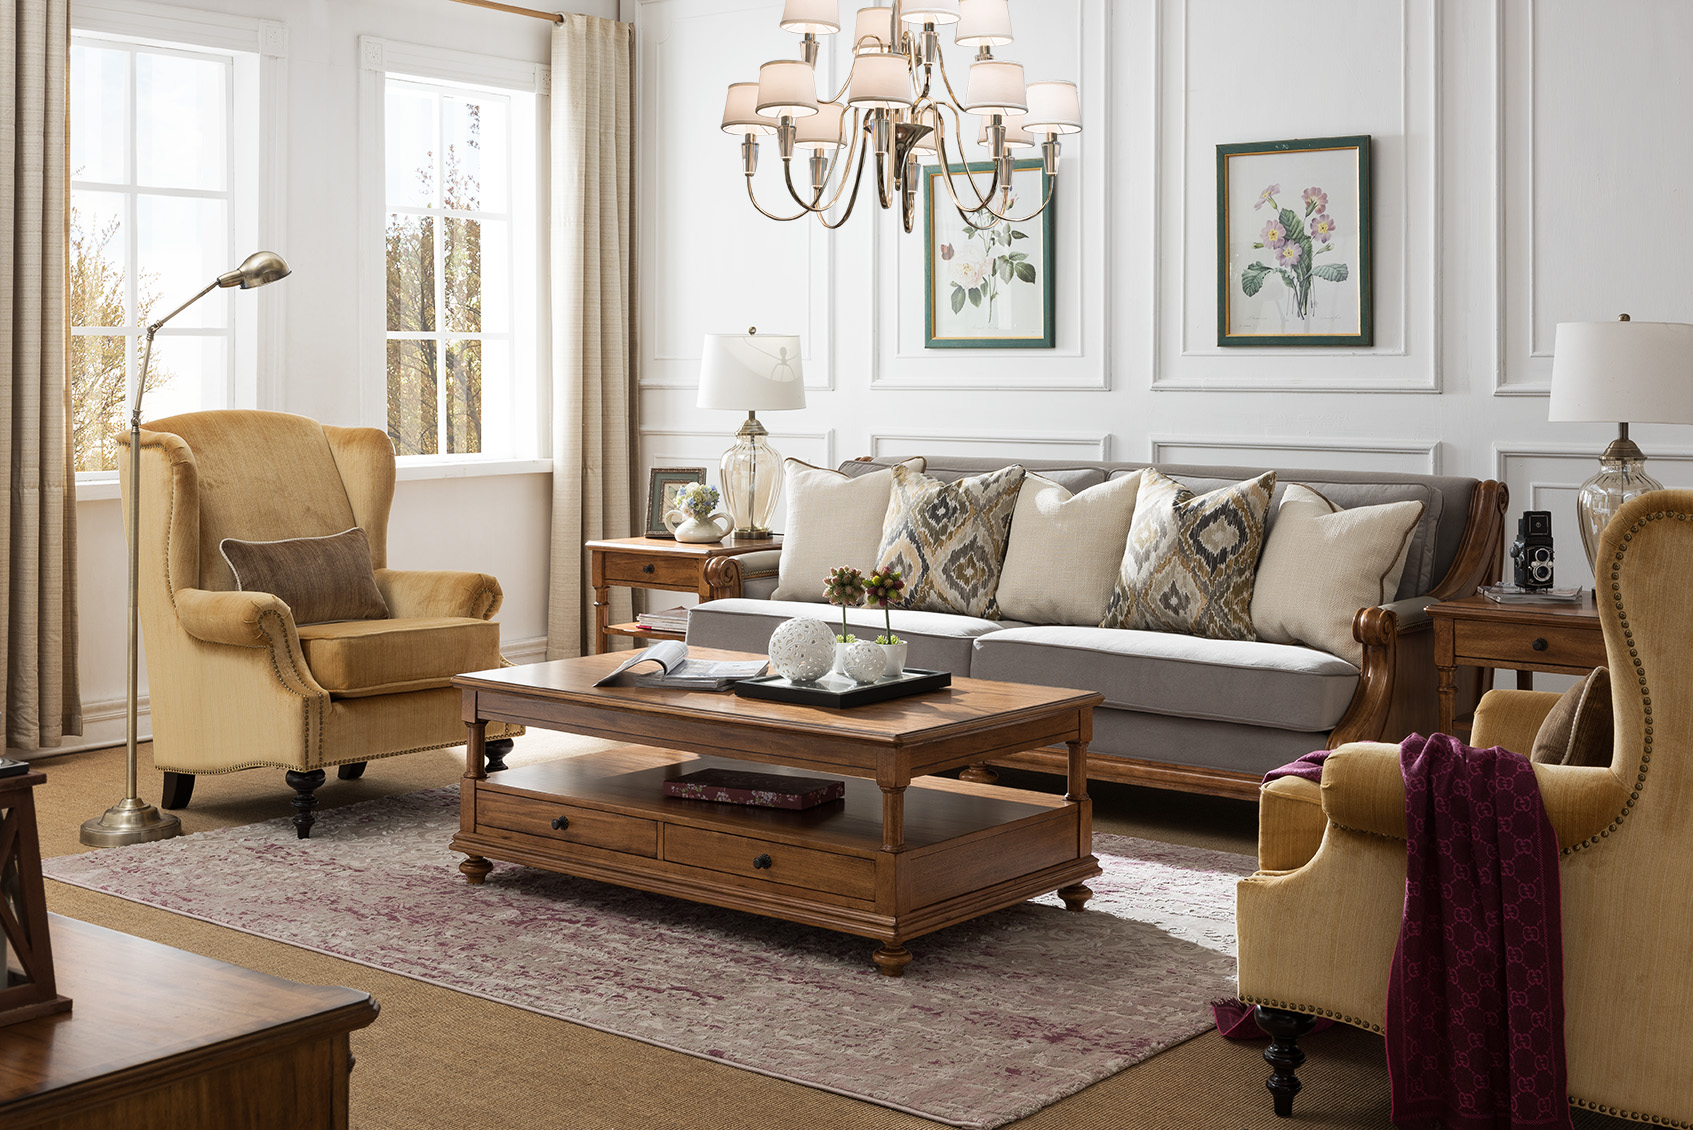 古典家具 美式家具 简美家具摄影  古典美式家具,美式式家具,东莞中睿